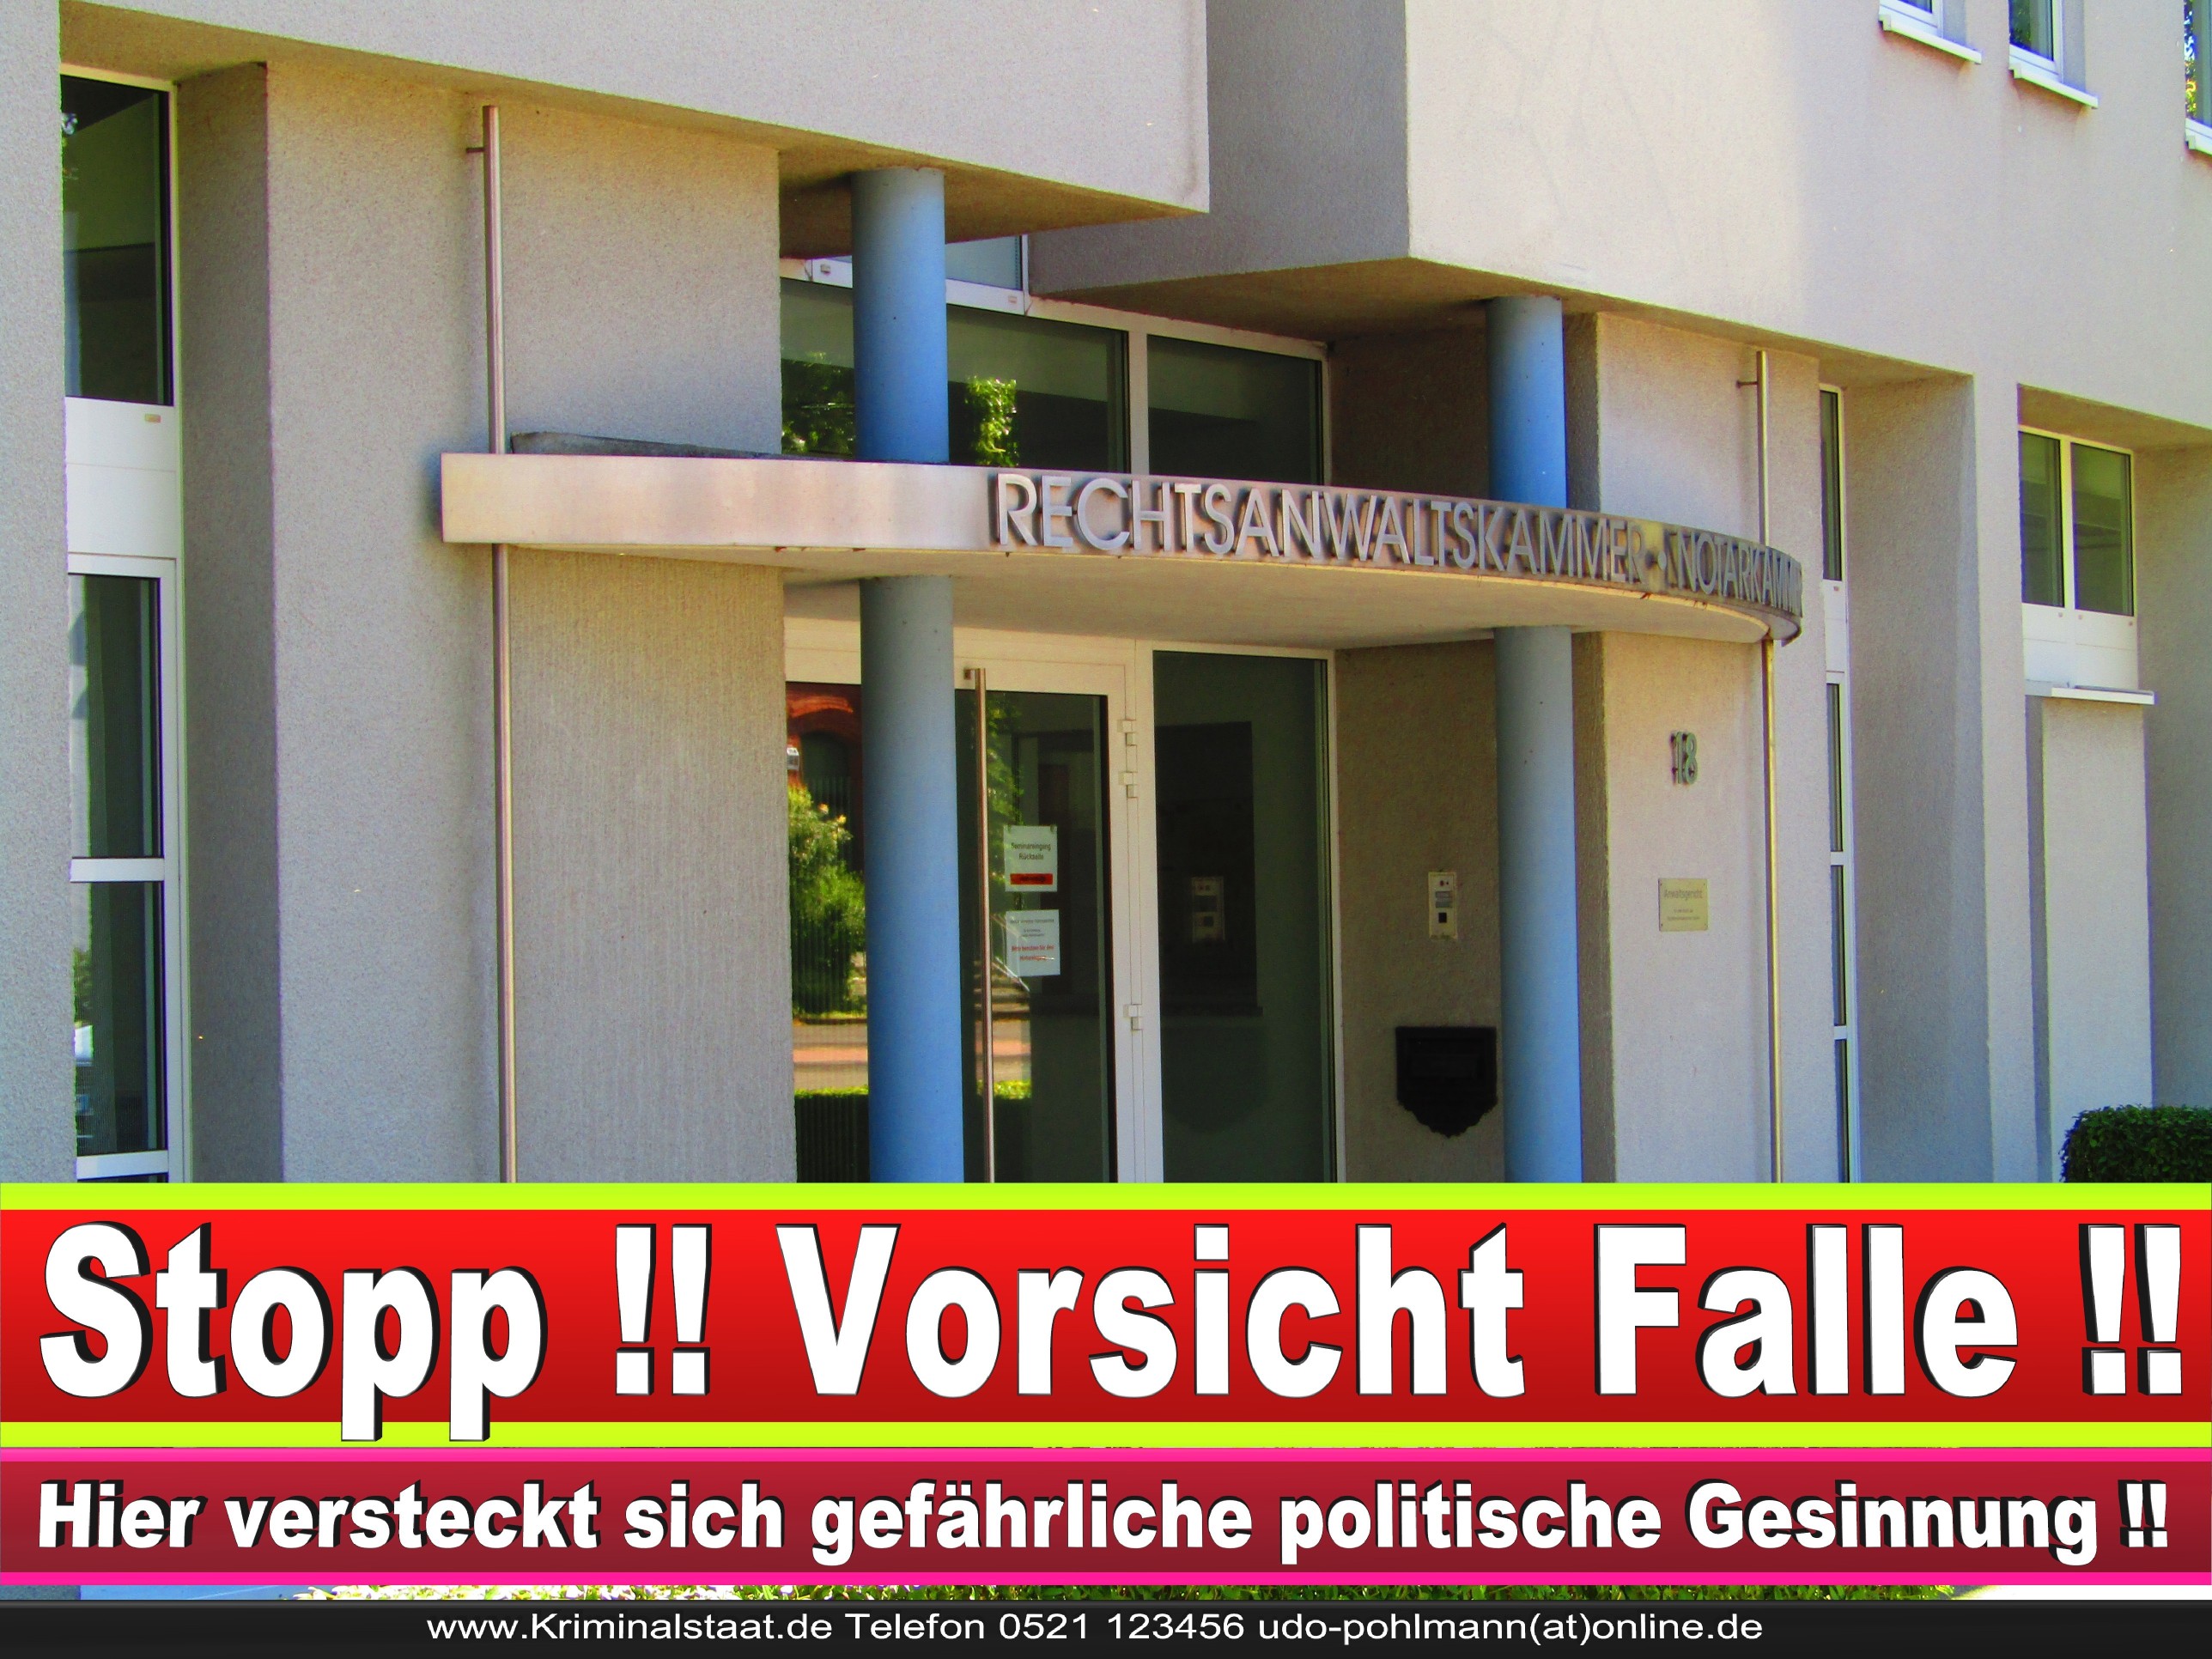 Rechtsanwaltskammer Hamm NRW Justizminister Rechtsanwalt Notar Vermögensverfall Urteil Rechtsprechung CDU SPD FDP Berufsordnung Rechtsanwälte Rechtsprechung (14) 1